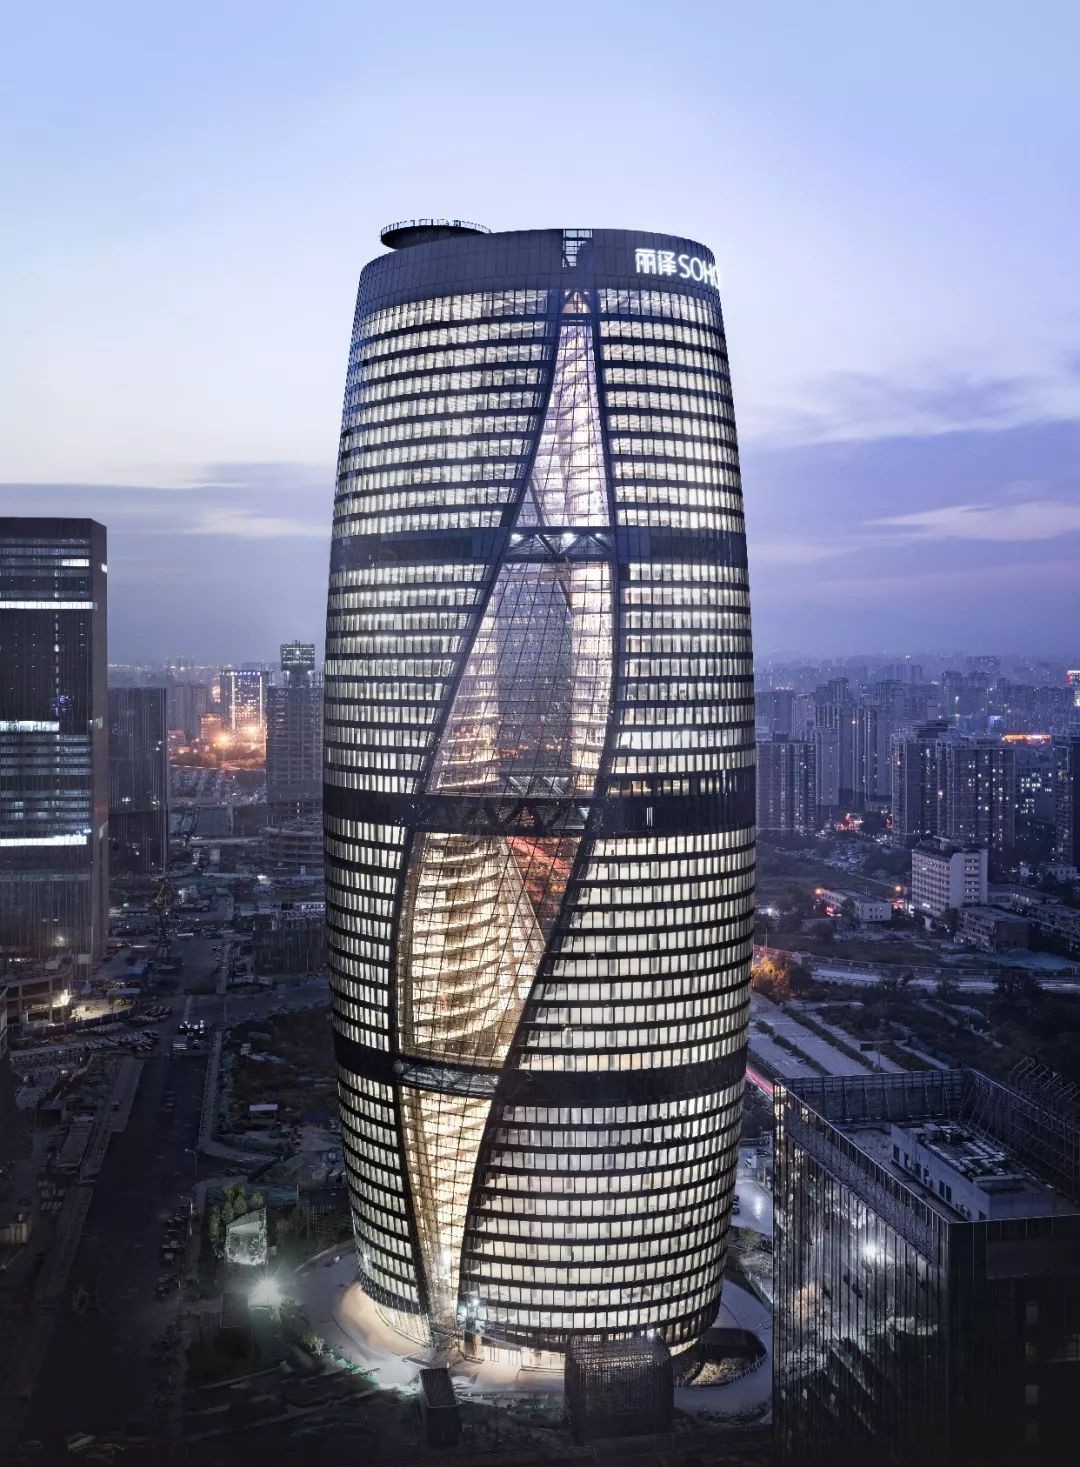 北京新地标丽泽soho来啦——全球最高中庭建筑,速来围观!